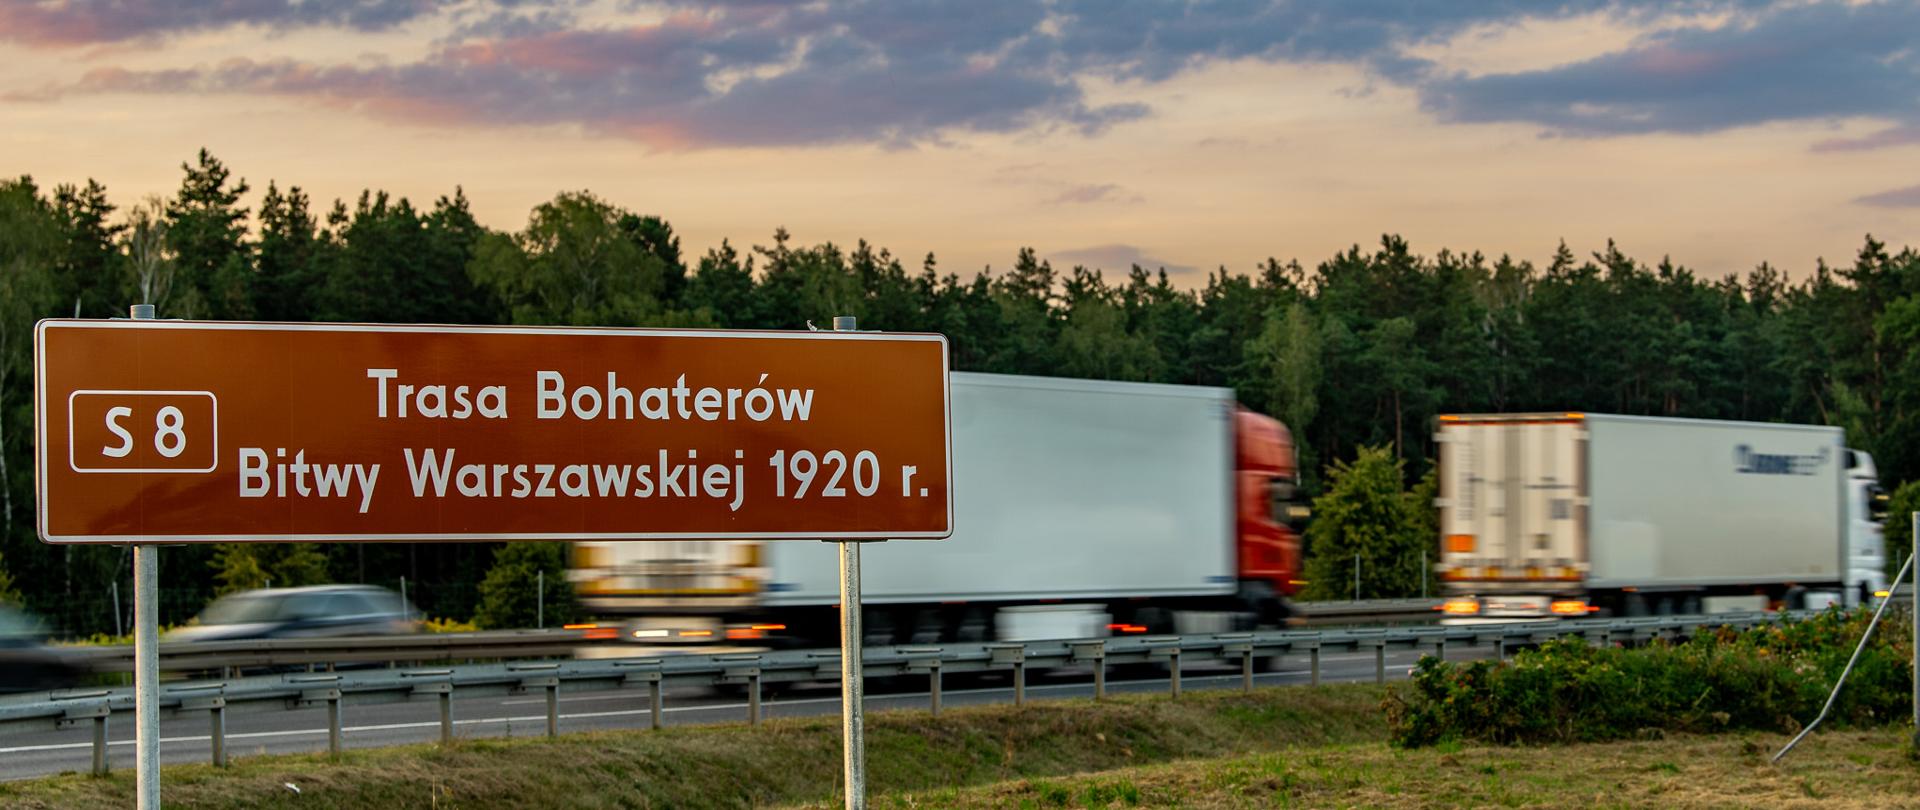 Zdjęcie przedstawiające tablicę informującą o poruszaniu się drogą ekspresową S8, Trasą Bohaterów Bitwy Warszawskiej 1920 r. W tle widać poruszające się drogą ekspresową pojazdy